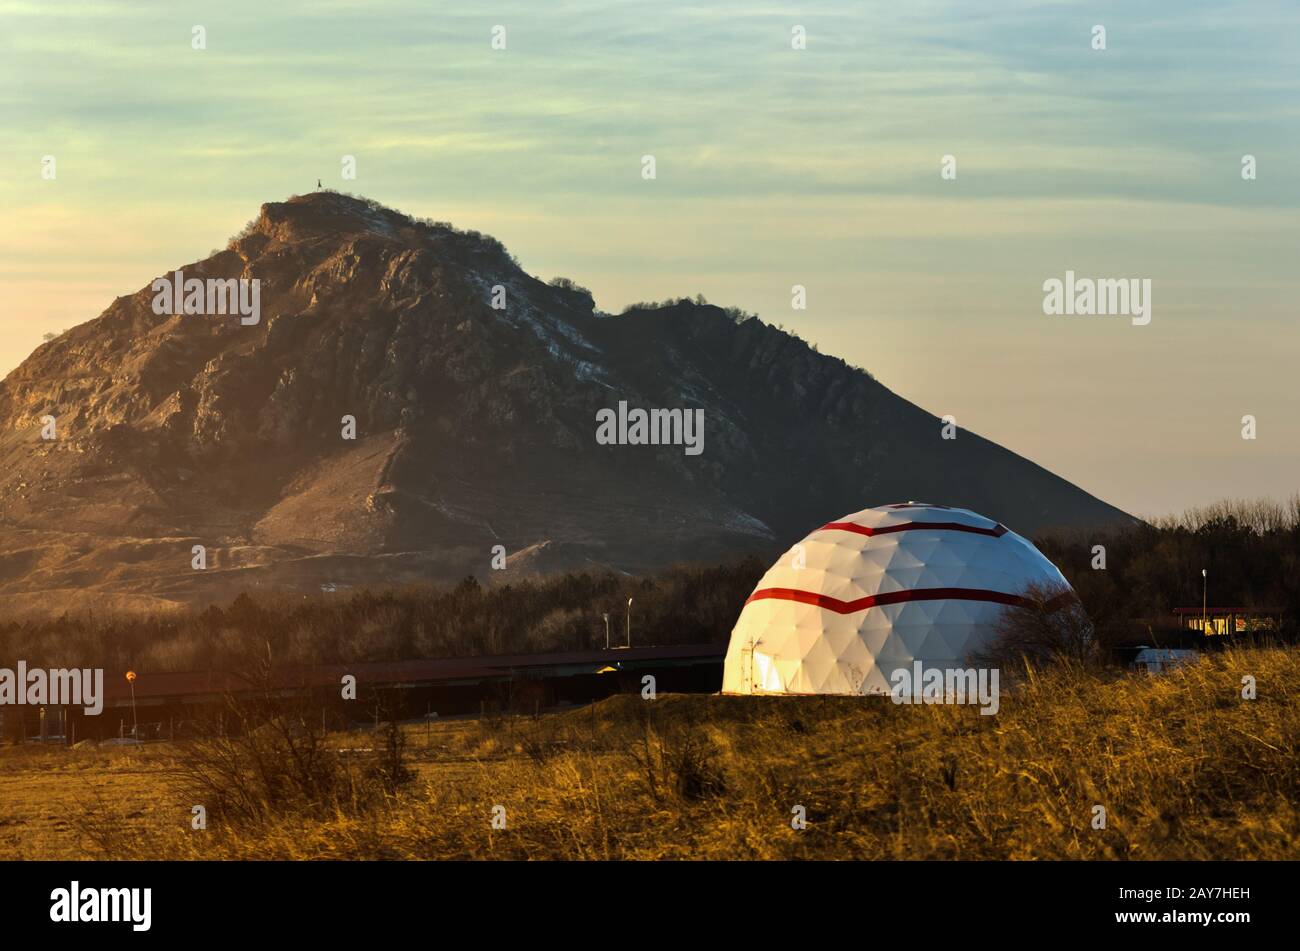 Galice sous la forme d'un dôme sur un fond des montagnes du Caucase Banque D'Images